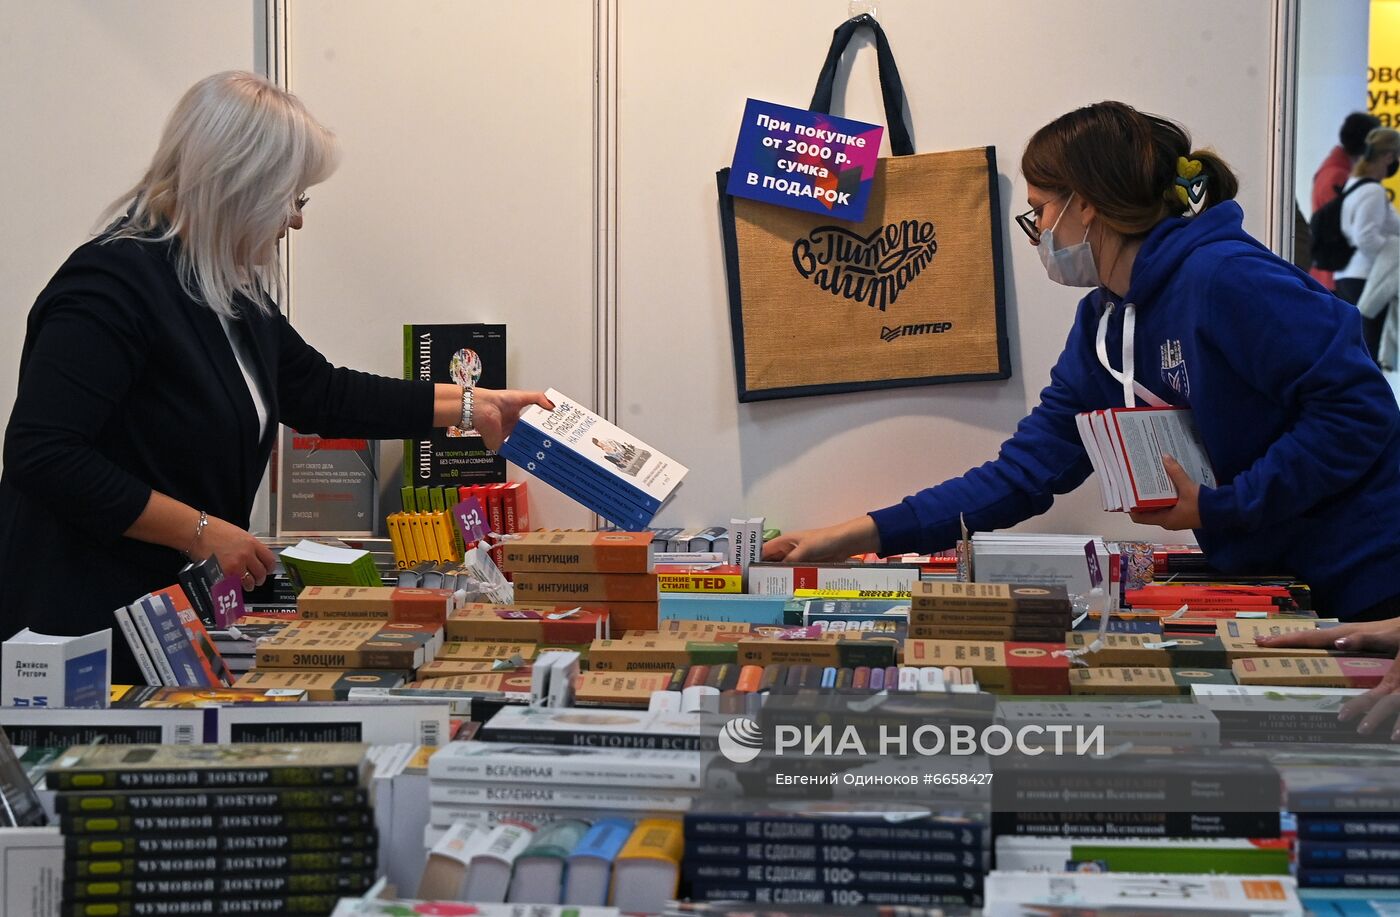 34-я Московская международная книжная ярмарка